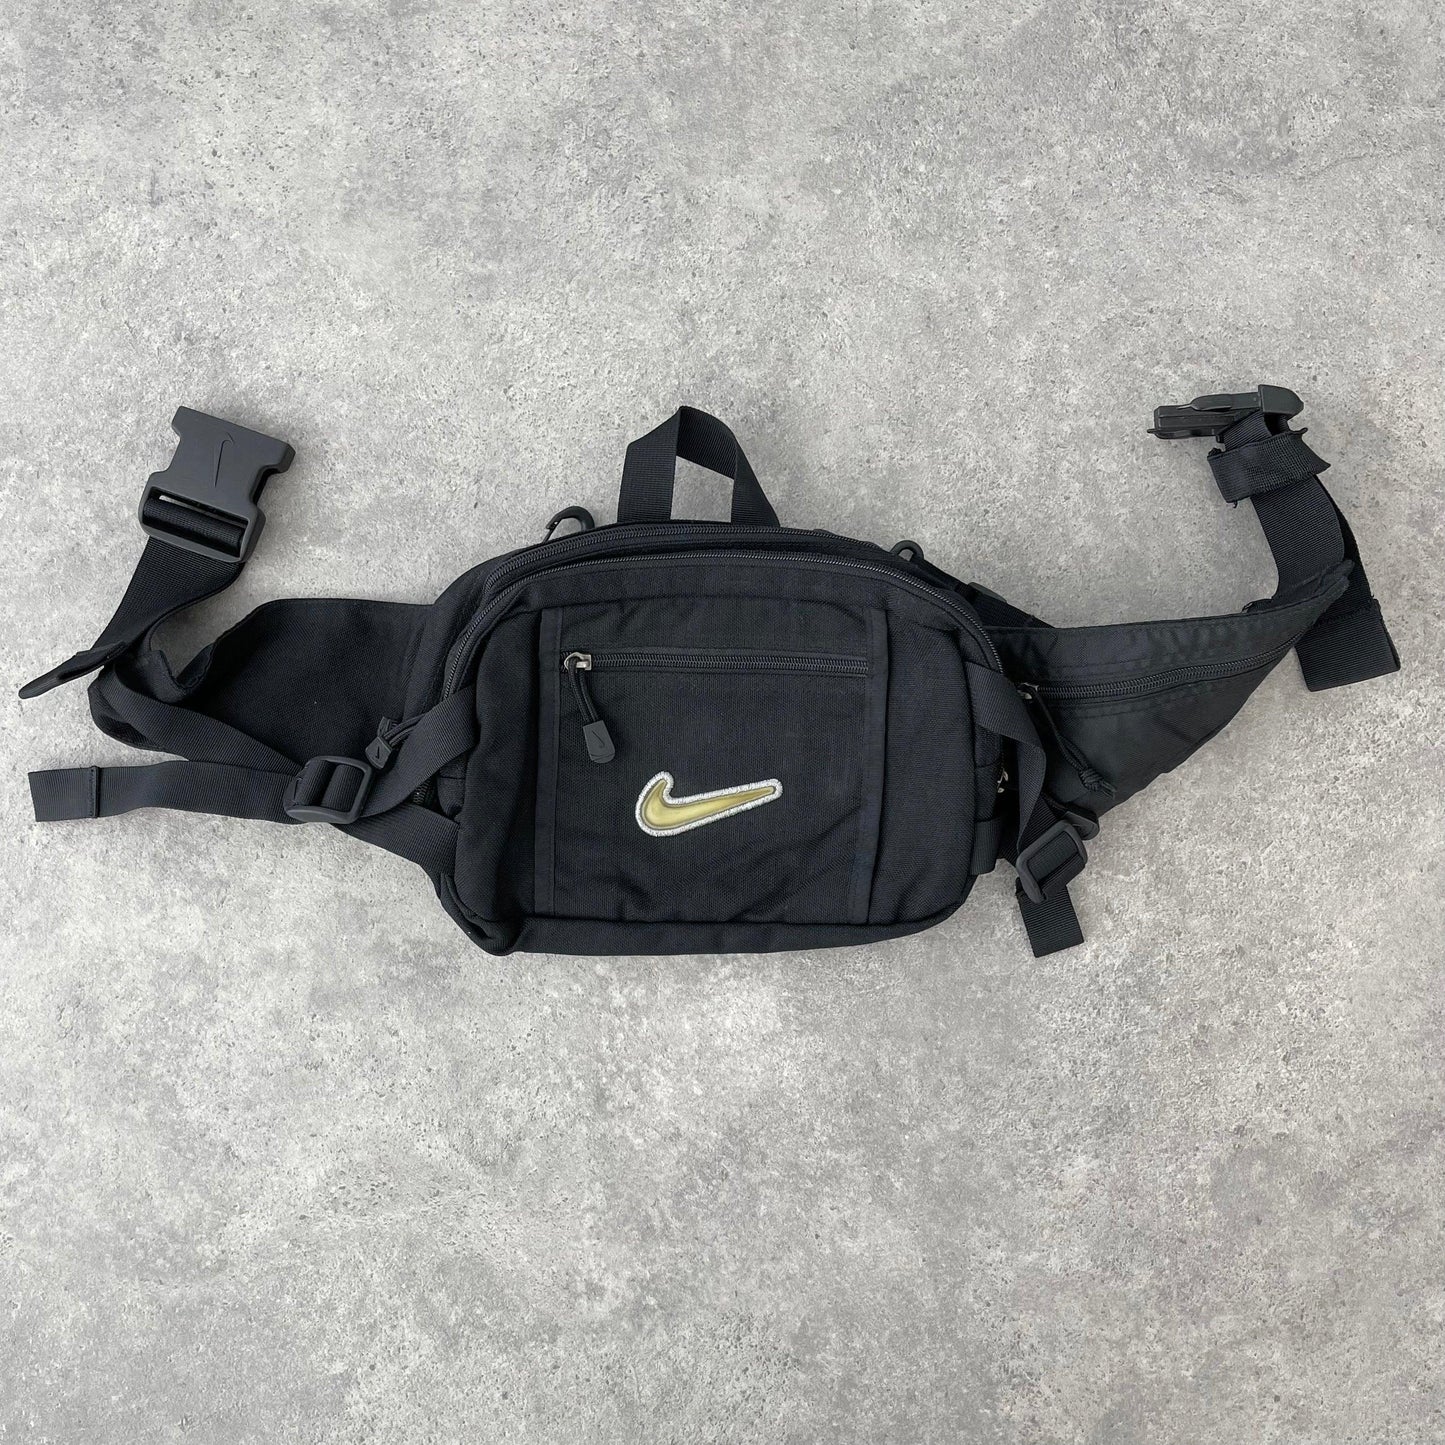 Nike 1990s cross body utility bag (11”x9”x5”) - Known Source